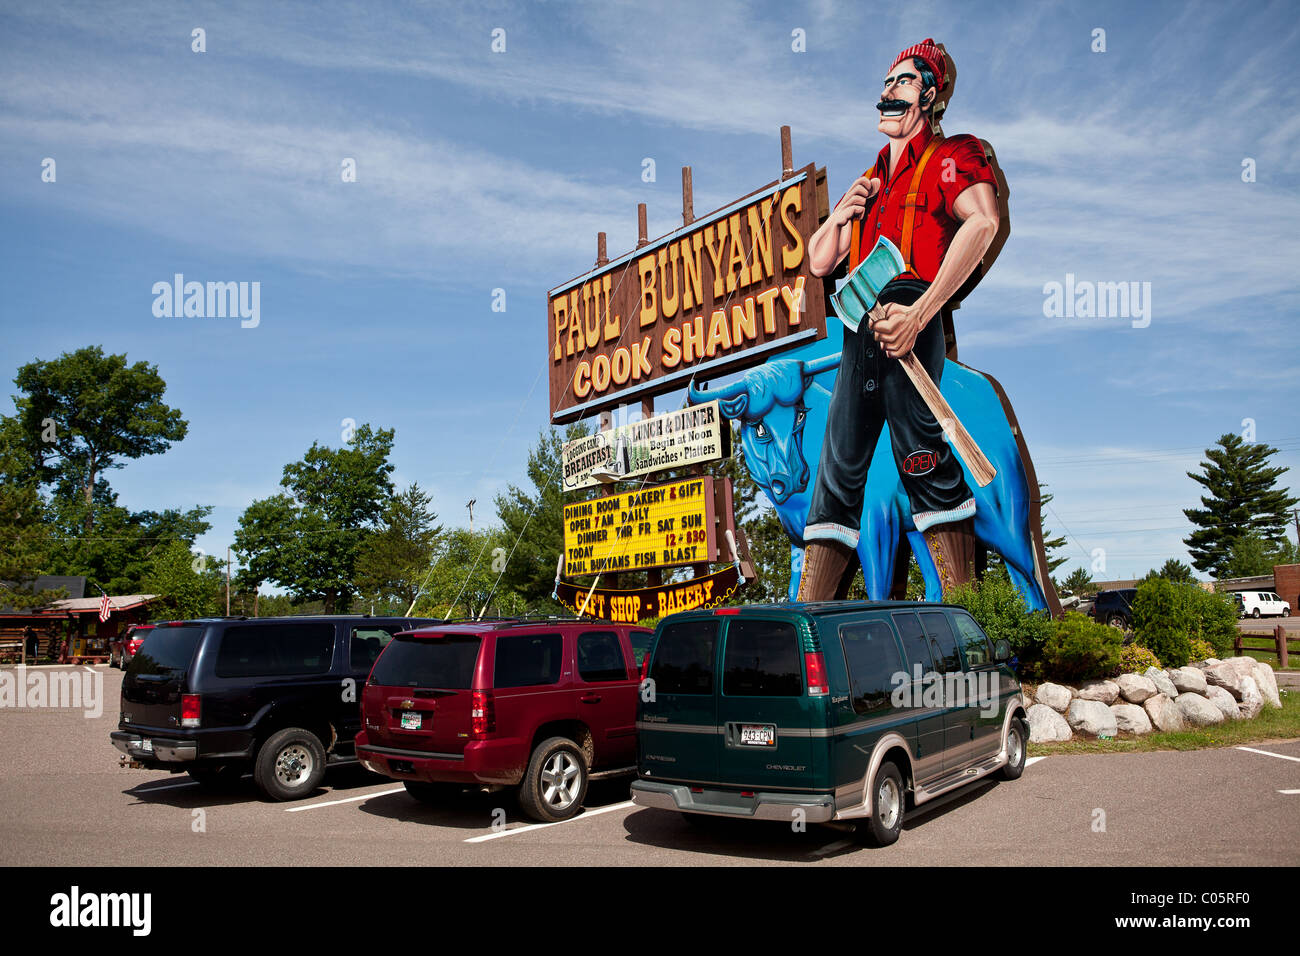 Paul Bunyan Cook Shanty, ein bekanntes am Straßenrand Restaurant in der Stadt Northwoods Minocqua, Wisconsin. Stockfoto